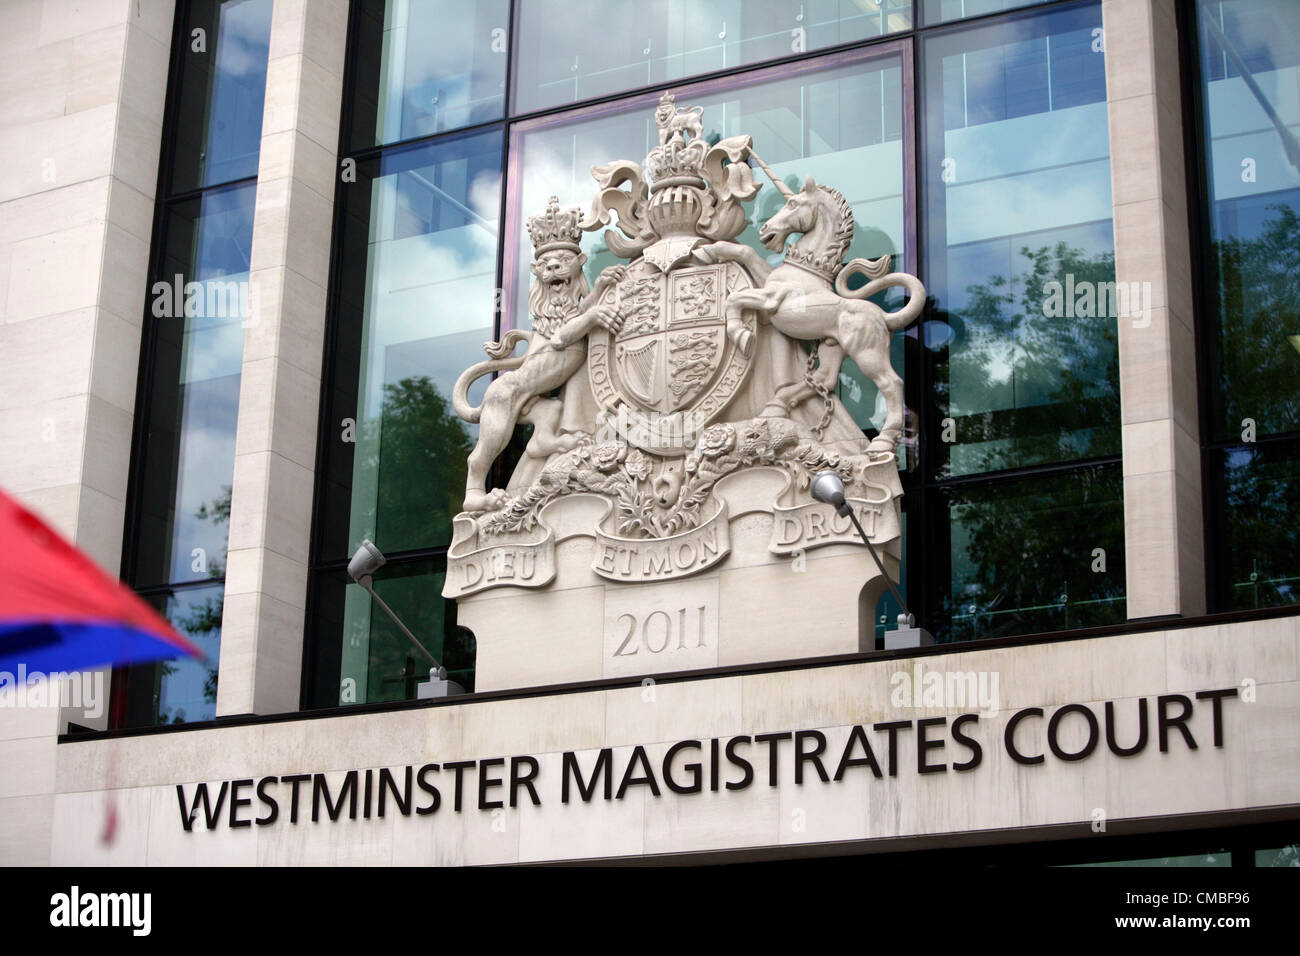 London, UK. Wednesday 11th July 2012. Westminster Magistrates Court, Marylebone Road, London, UK. Stock Photo